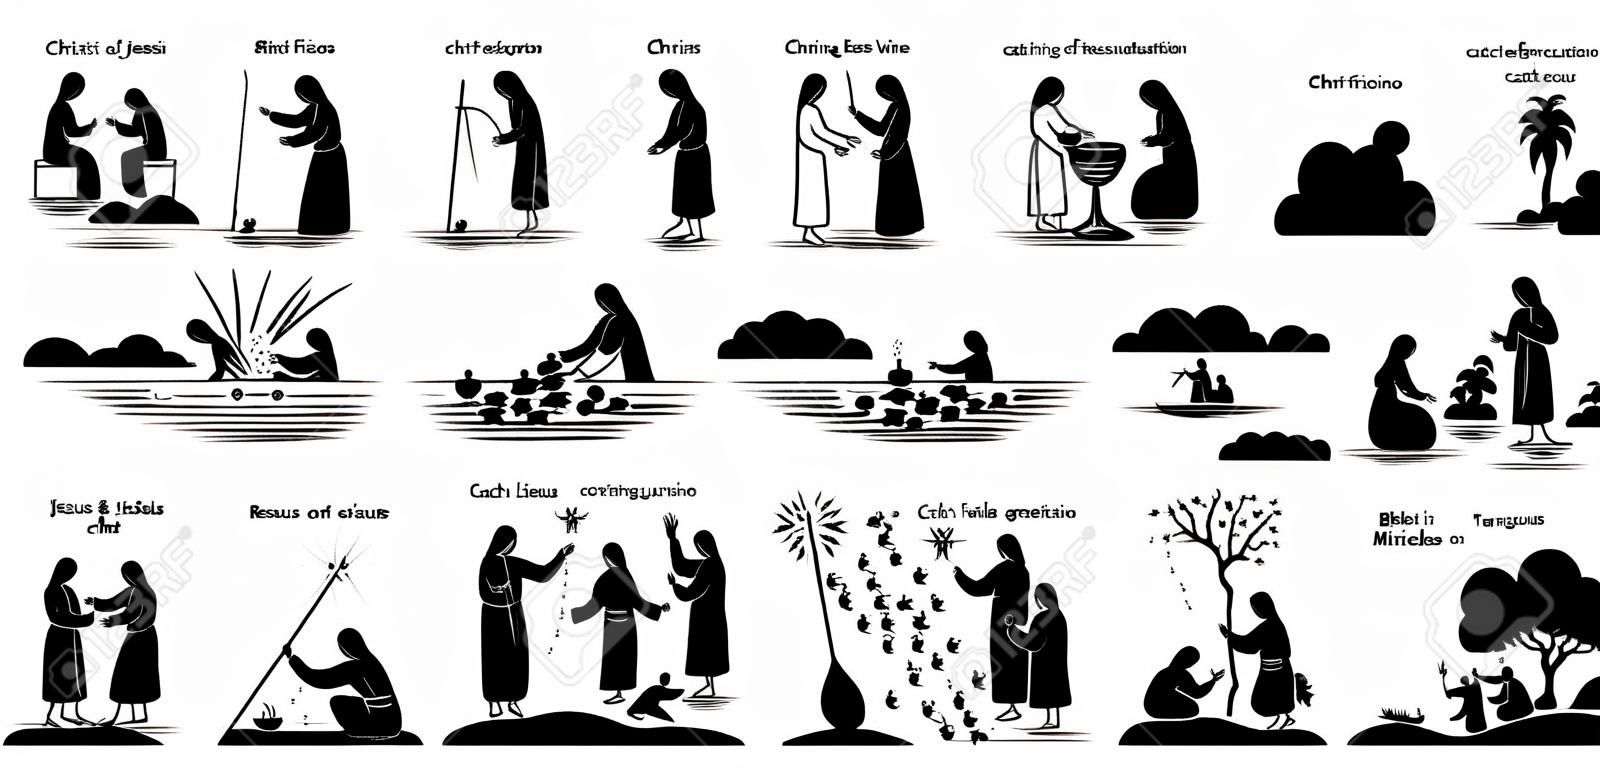 Pictograma de los iconos de los milagros de Jesucristo. Pegue la figura de Jesucristo curando a una mujer ciega, convirtiendo el agua en vino, exorcismo, resurrección, pesca, caminar sobre el agua, alimentación y transfiguración.